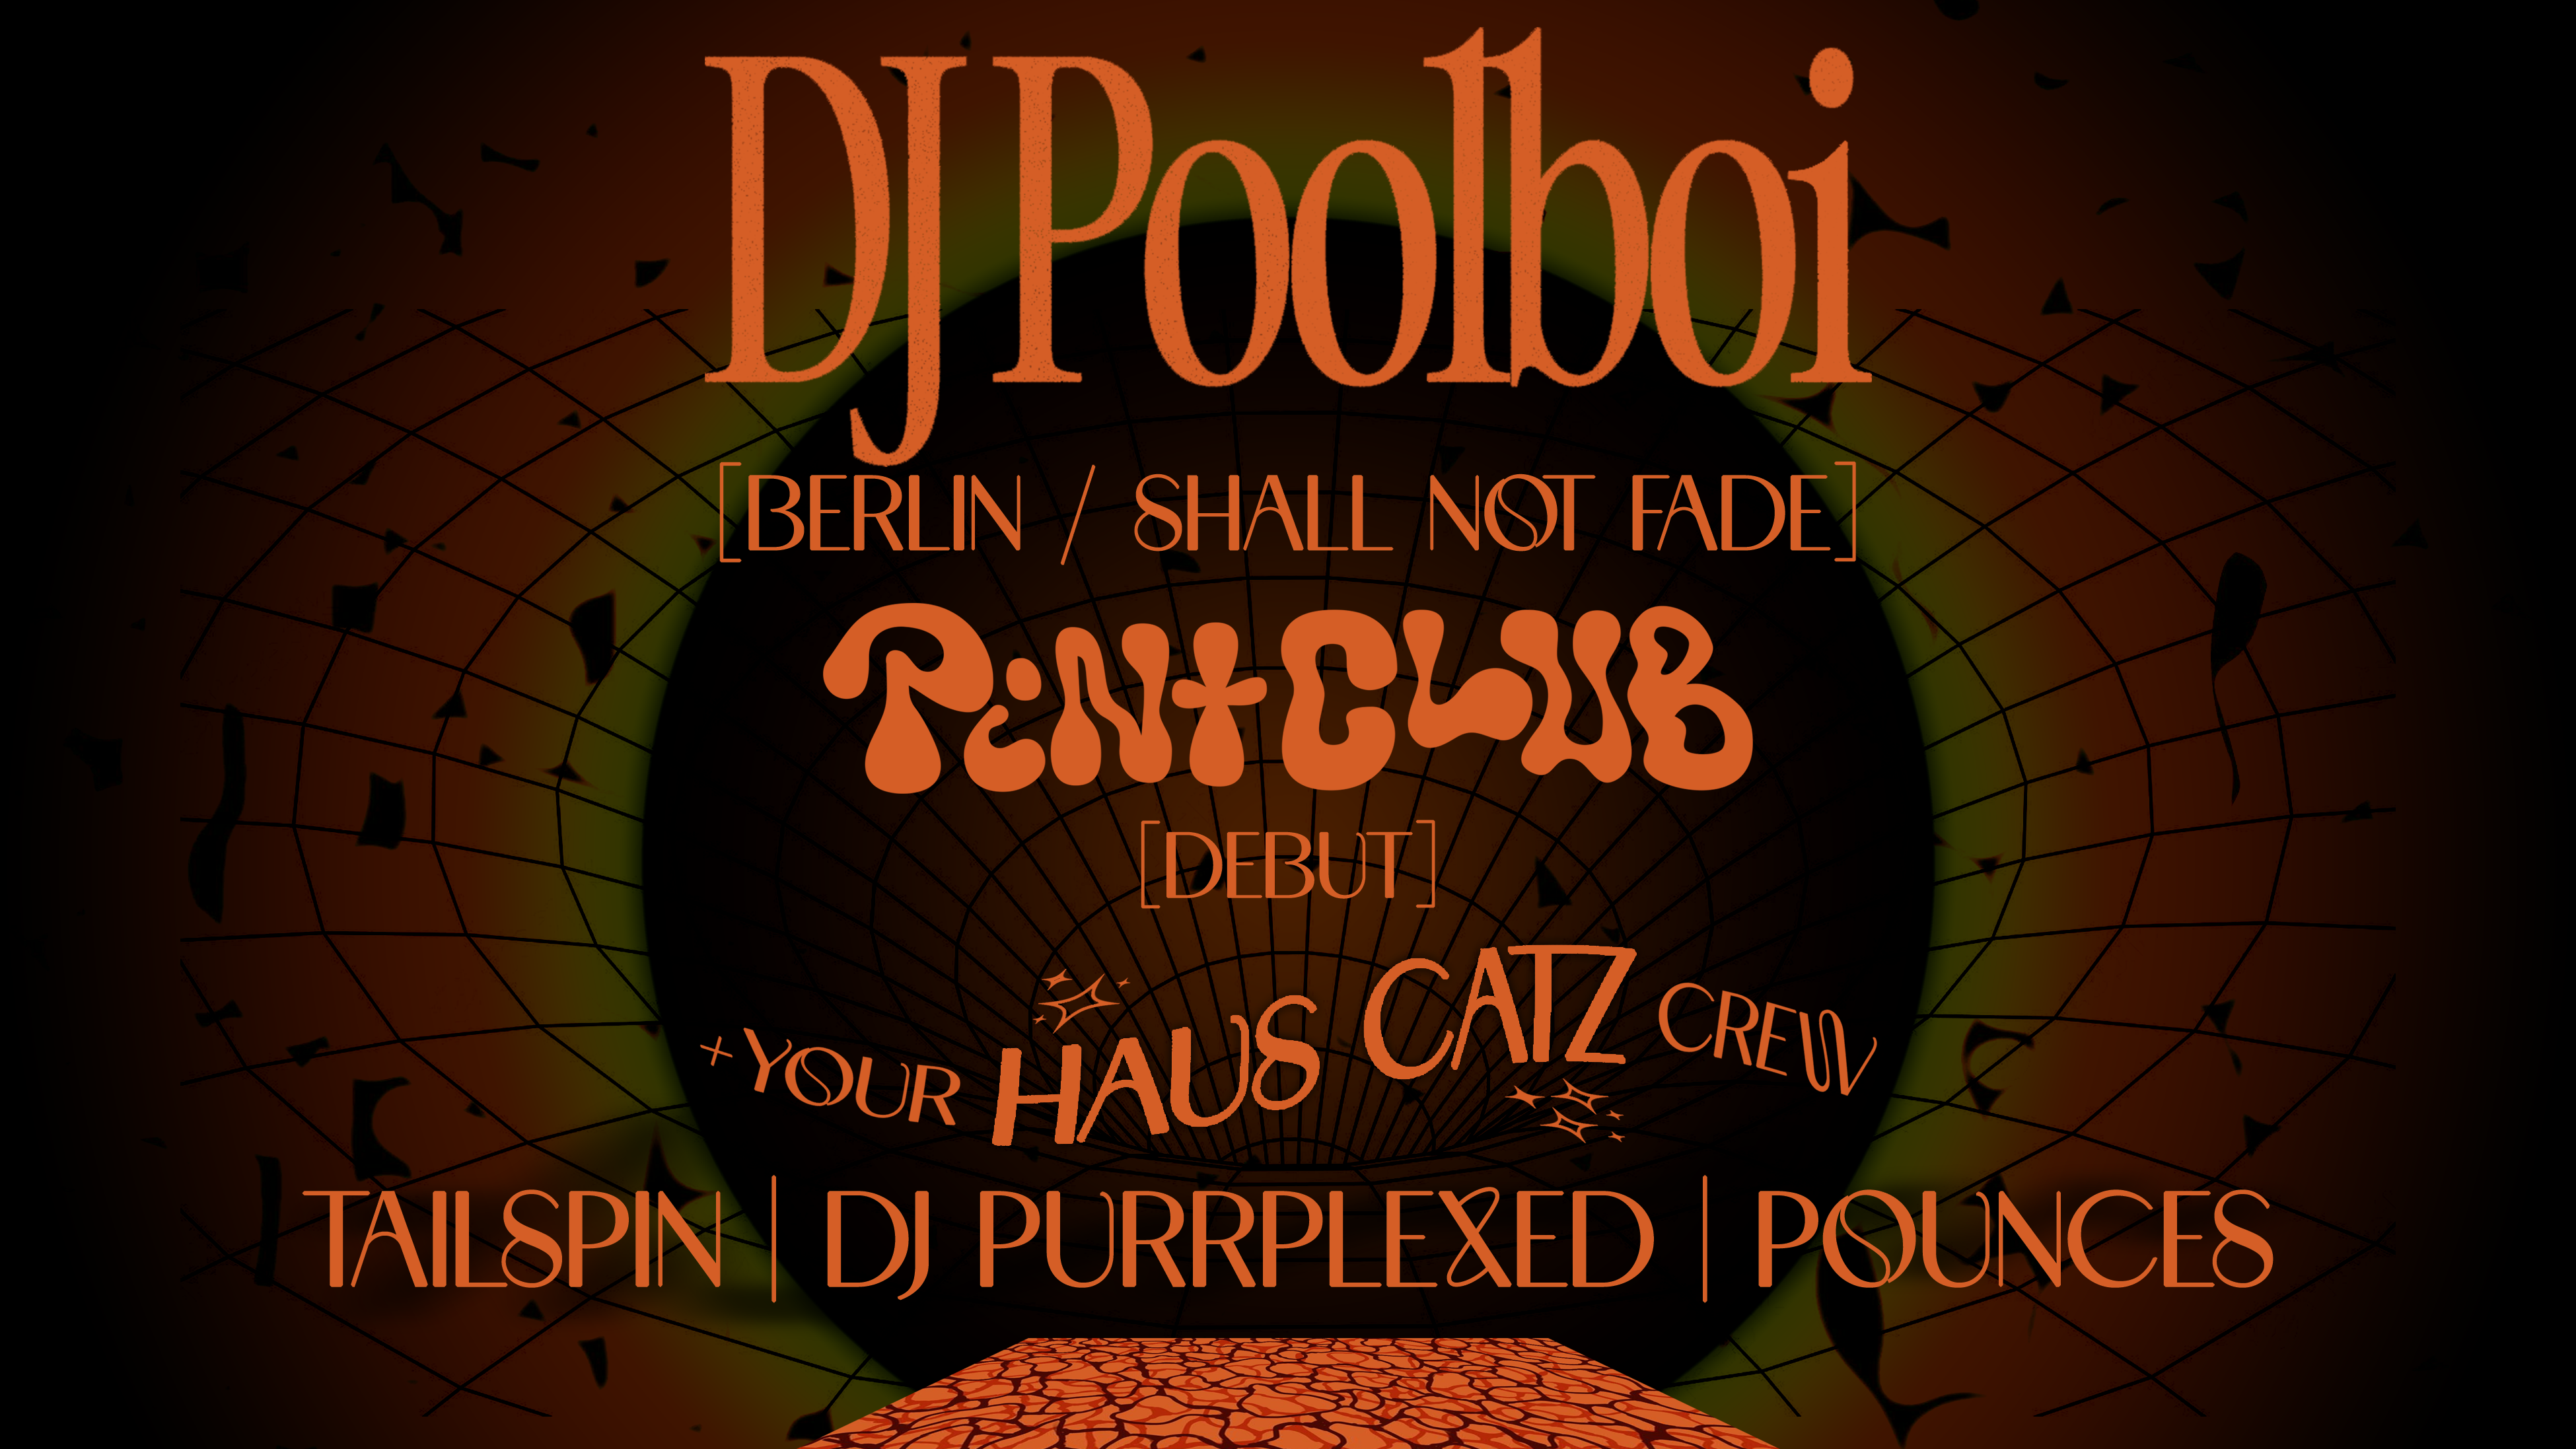 🎫 Haus Catz presents DJ Poolboi [Shall Not Fade] + Pint Shotgun